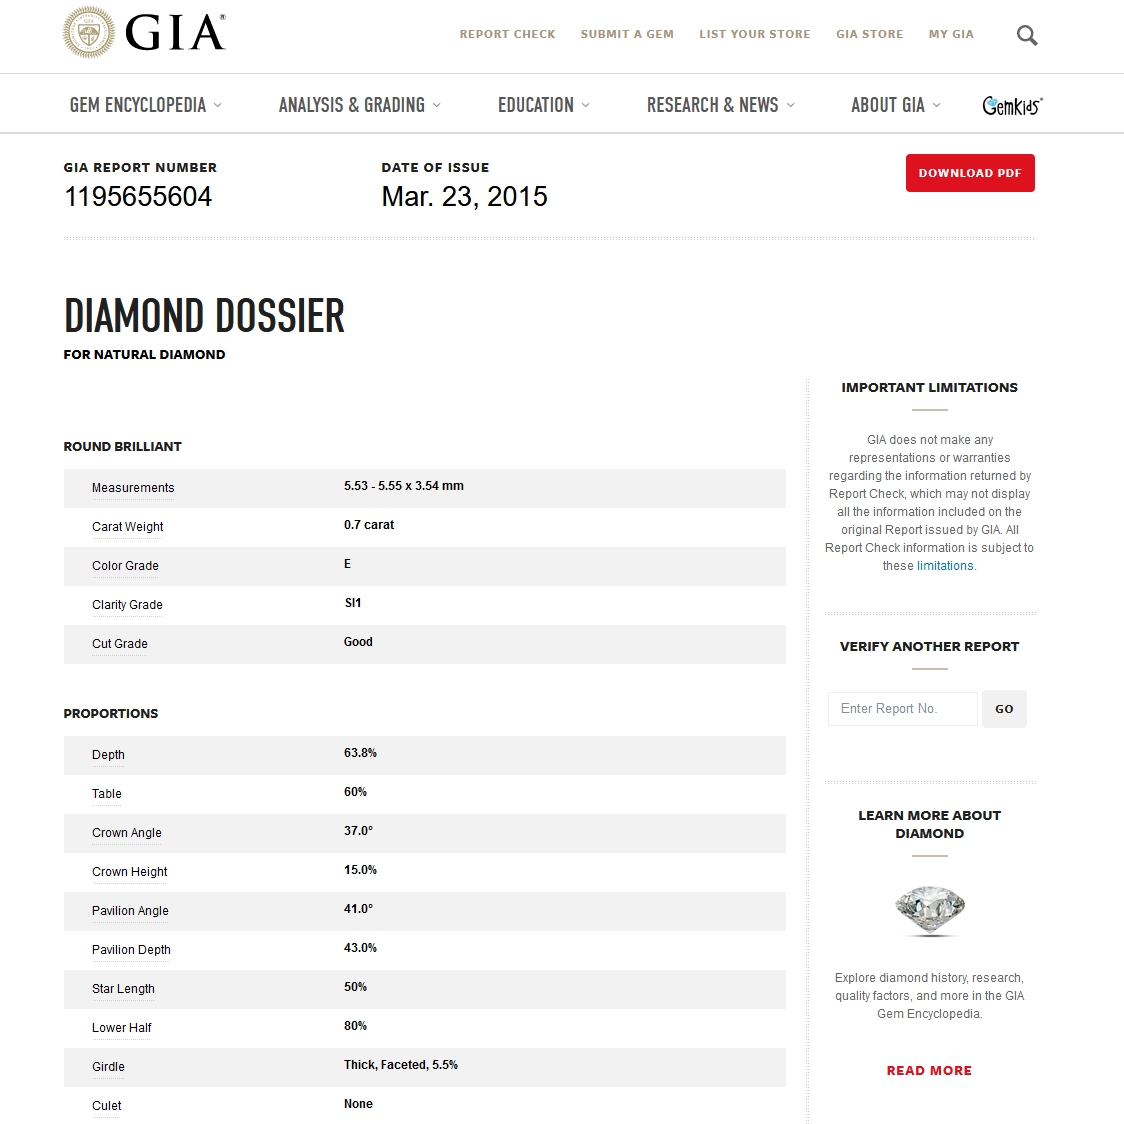 Diamante Naturale Certificato GIA Kt. 0,70 Colore E Purezza SI1